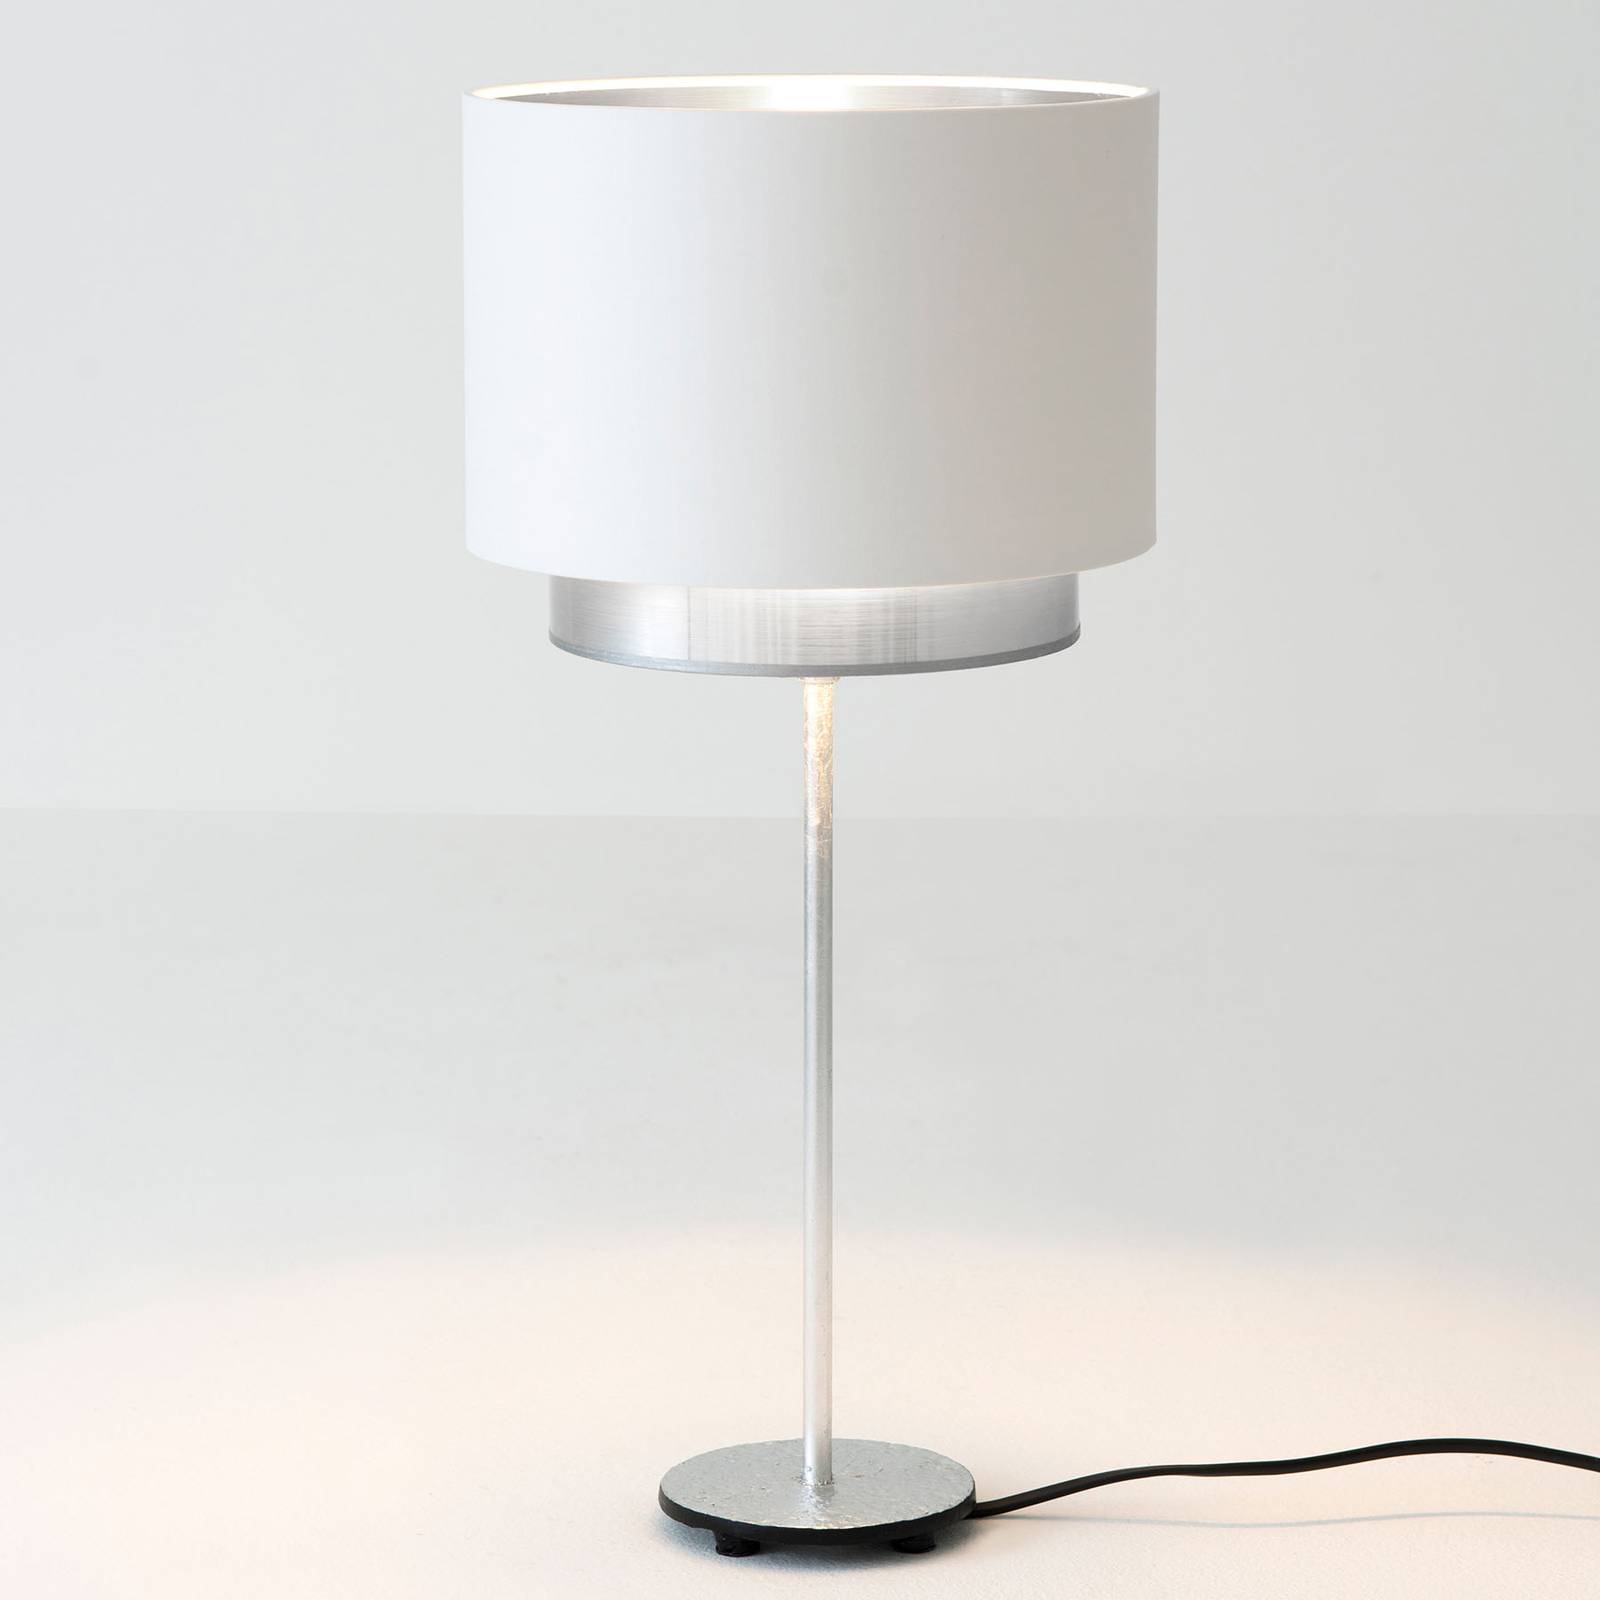 Holländer mattia asztali lámpa, perla selyem fehér/ezüst